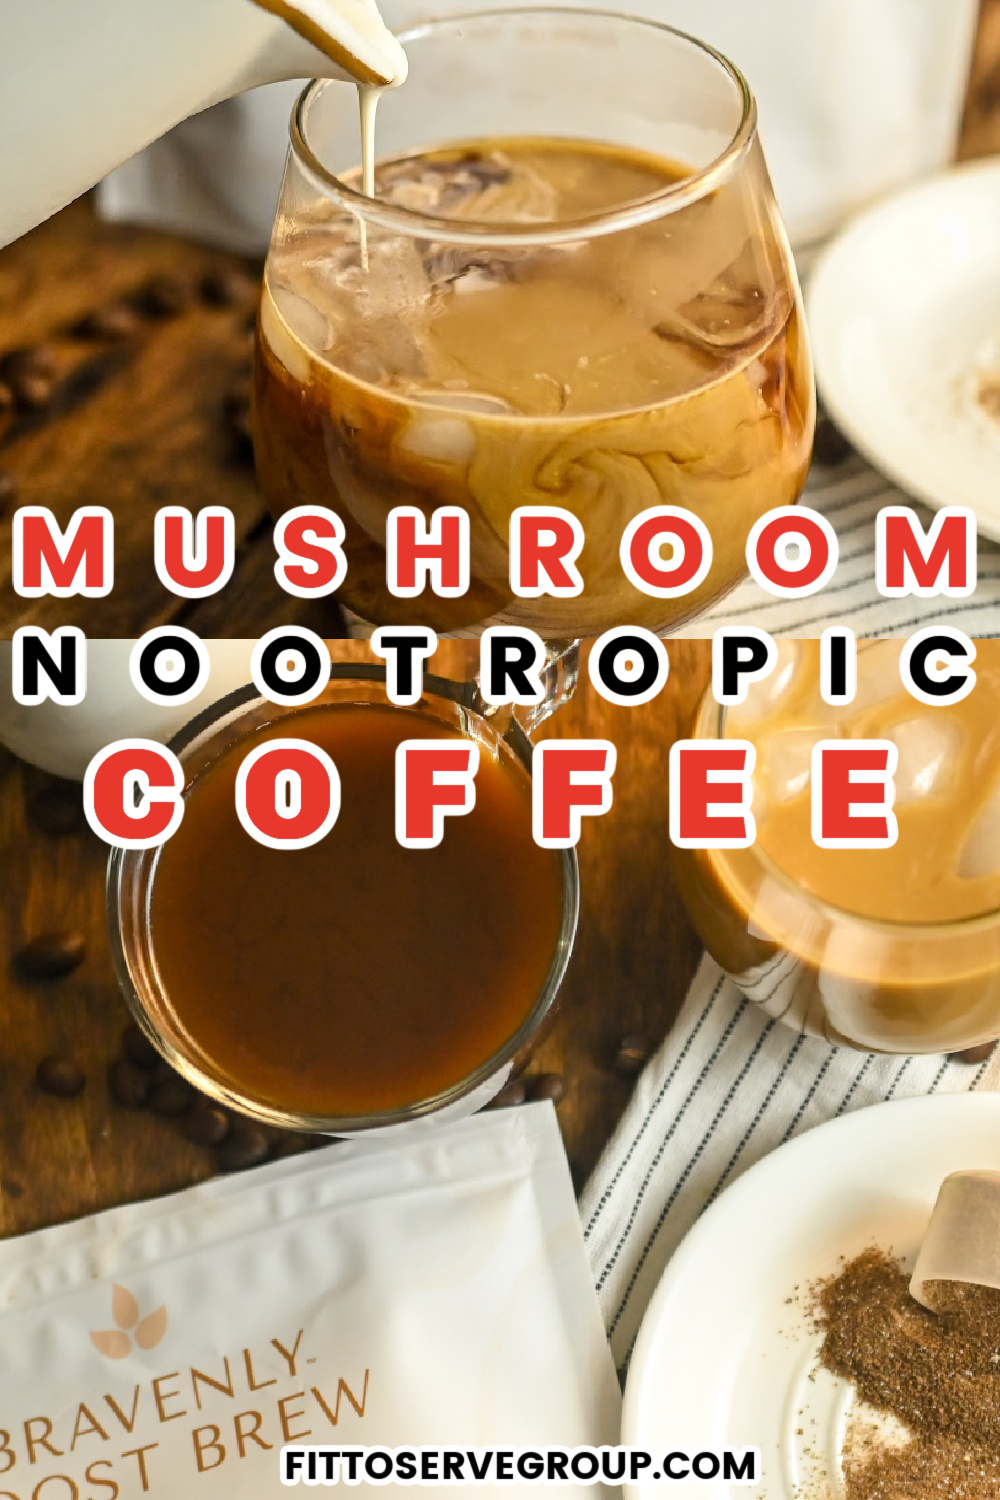 Bravenly Nootropic Mushroom Coffee